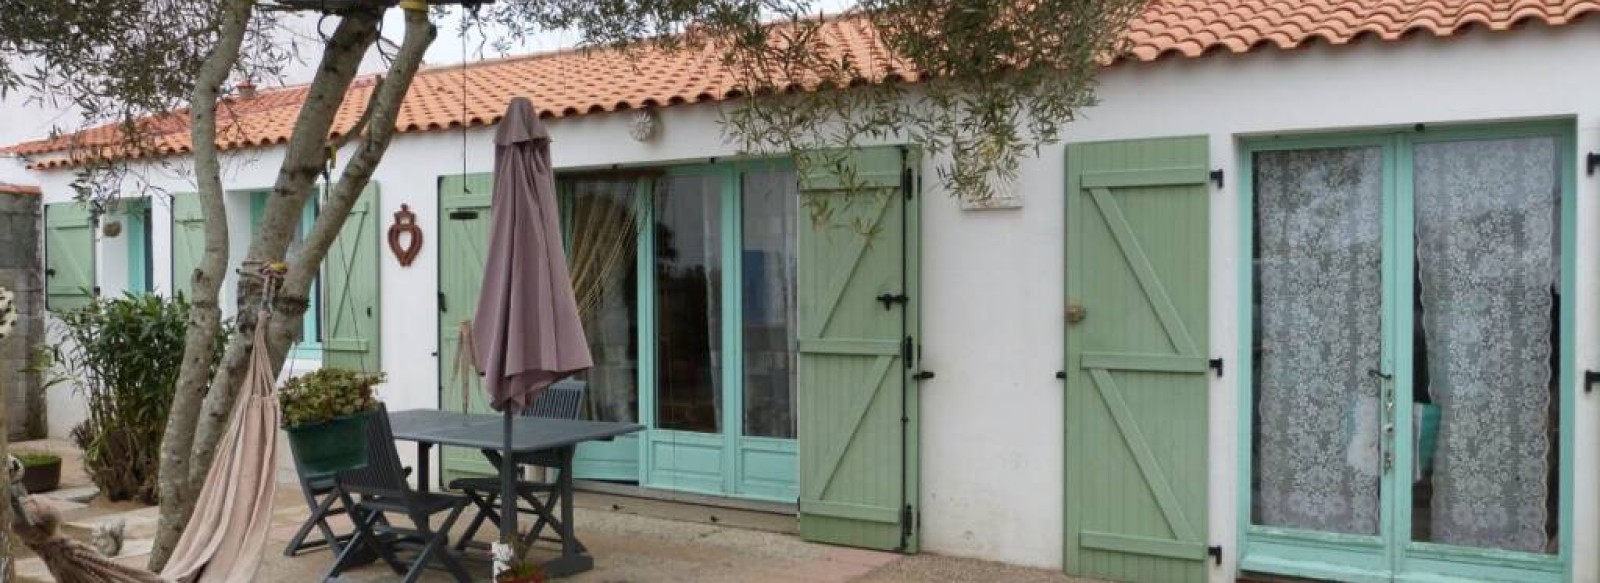 Maison de vacances a Barbatre a proximite du centre sur l'Ile de Noirmoutier